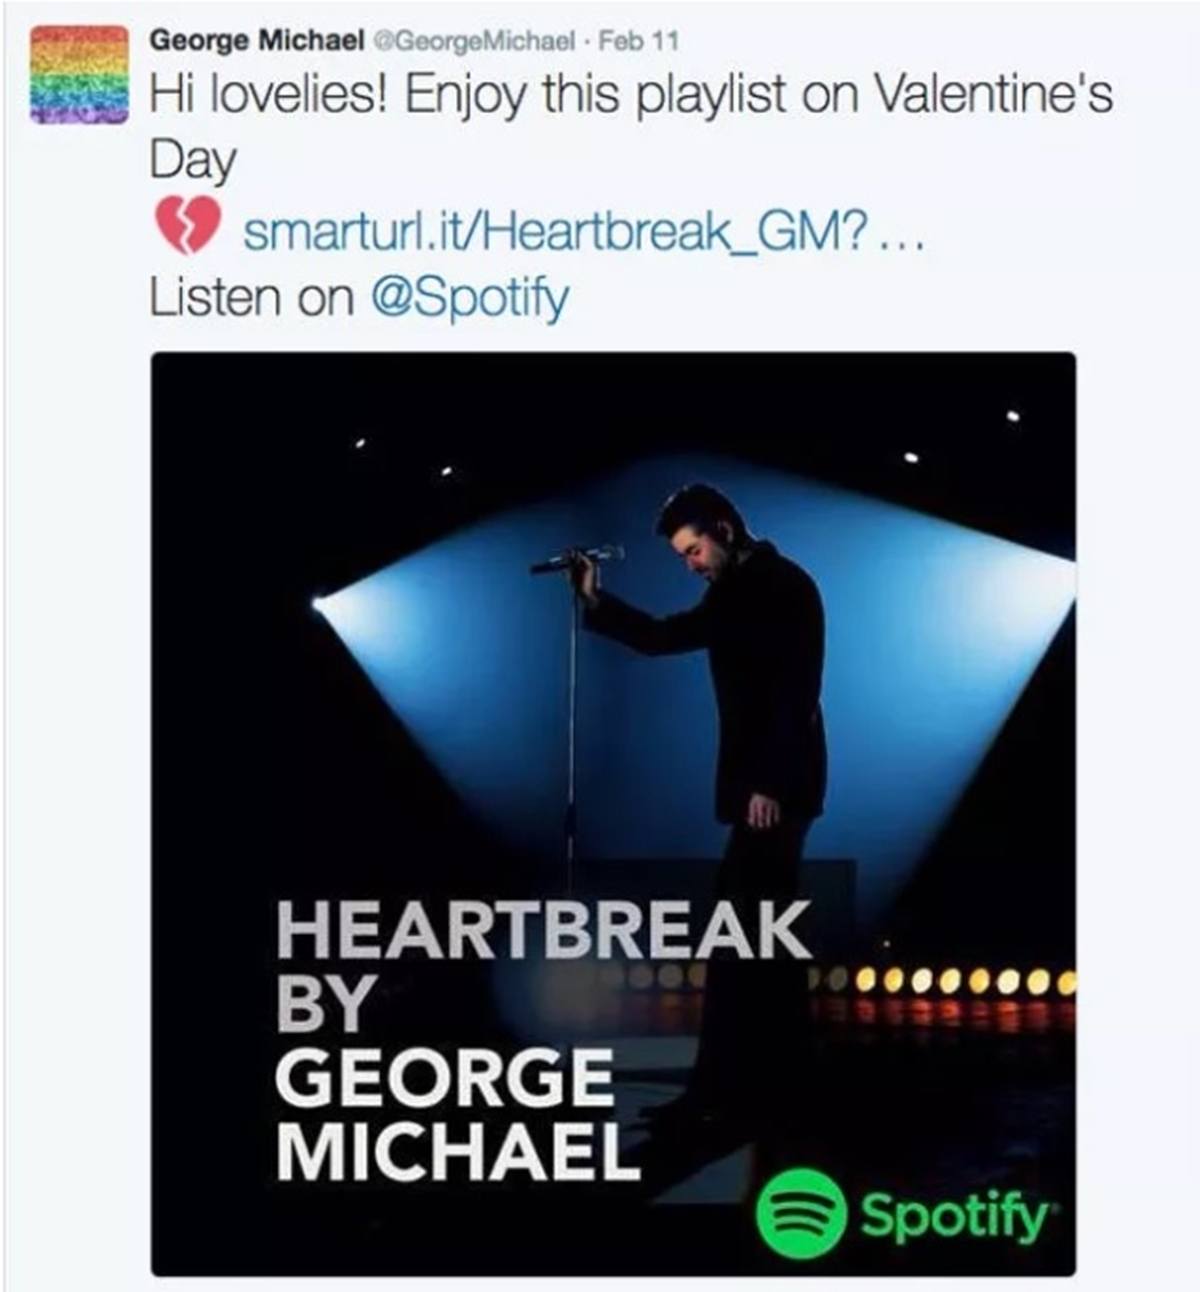 George Michael Last Tweet